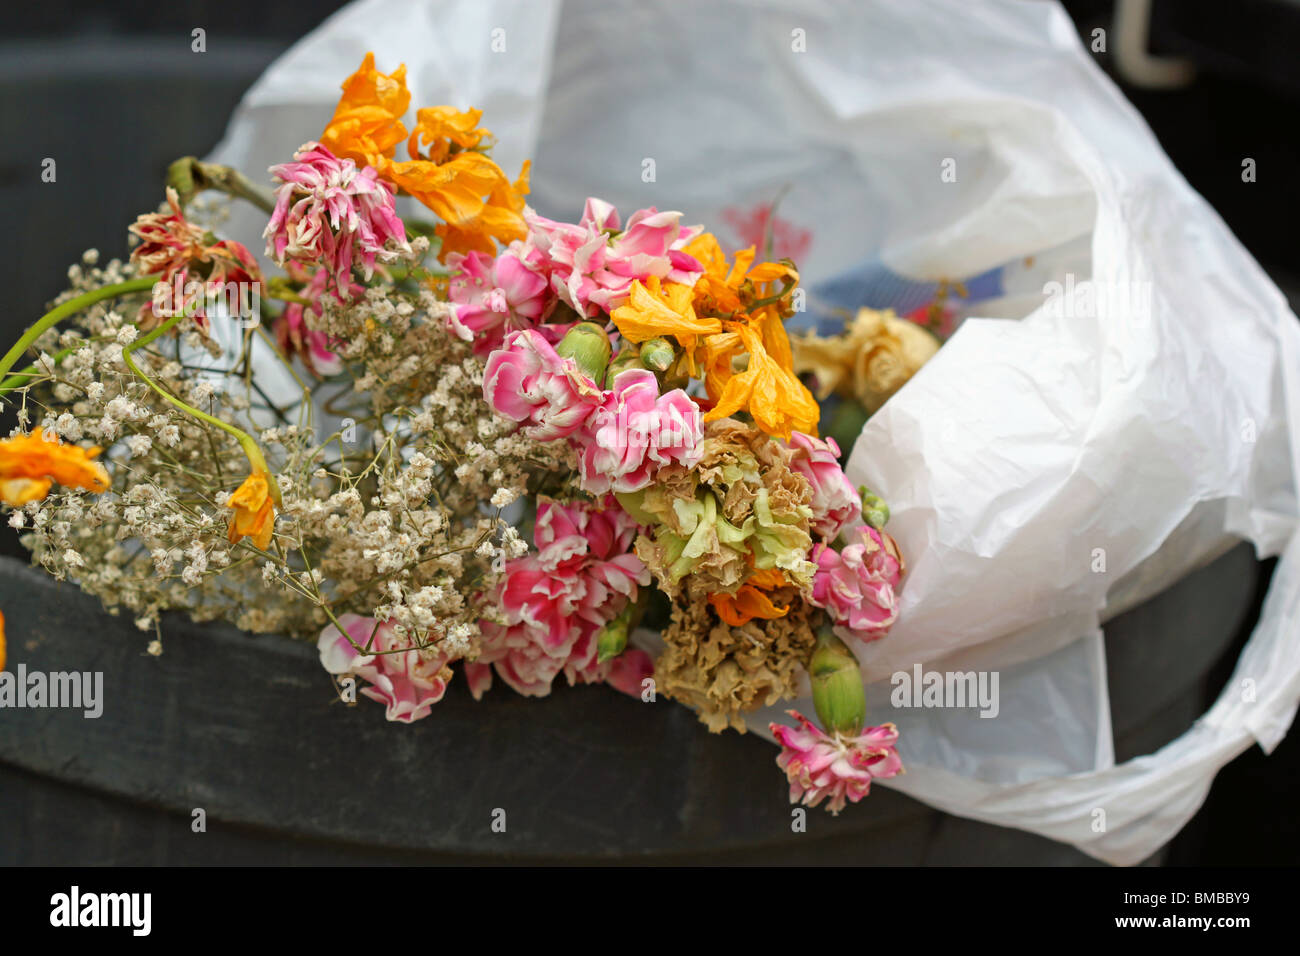 Flores muertas en el cubo de basura / papelera/ basura/ basura Foto de stock